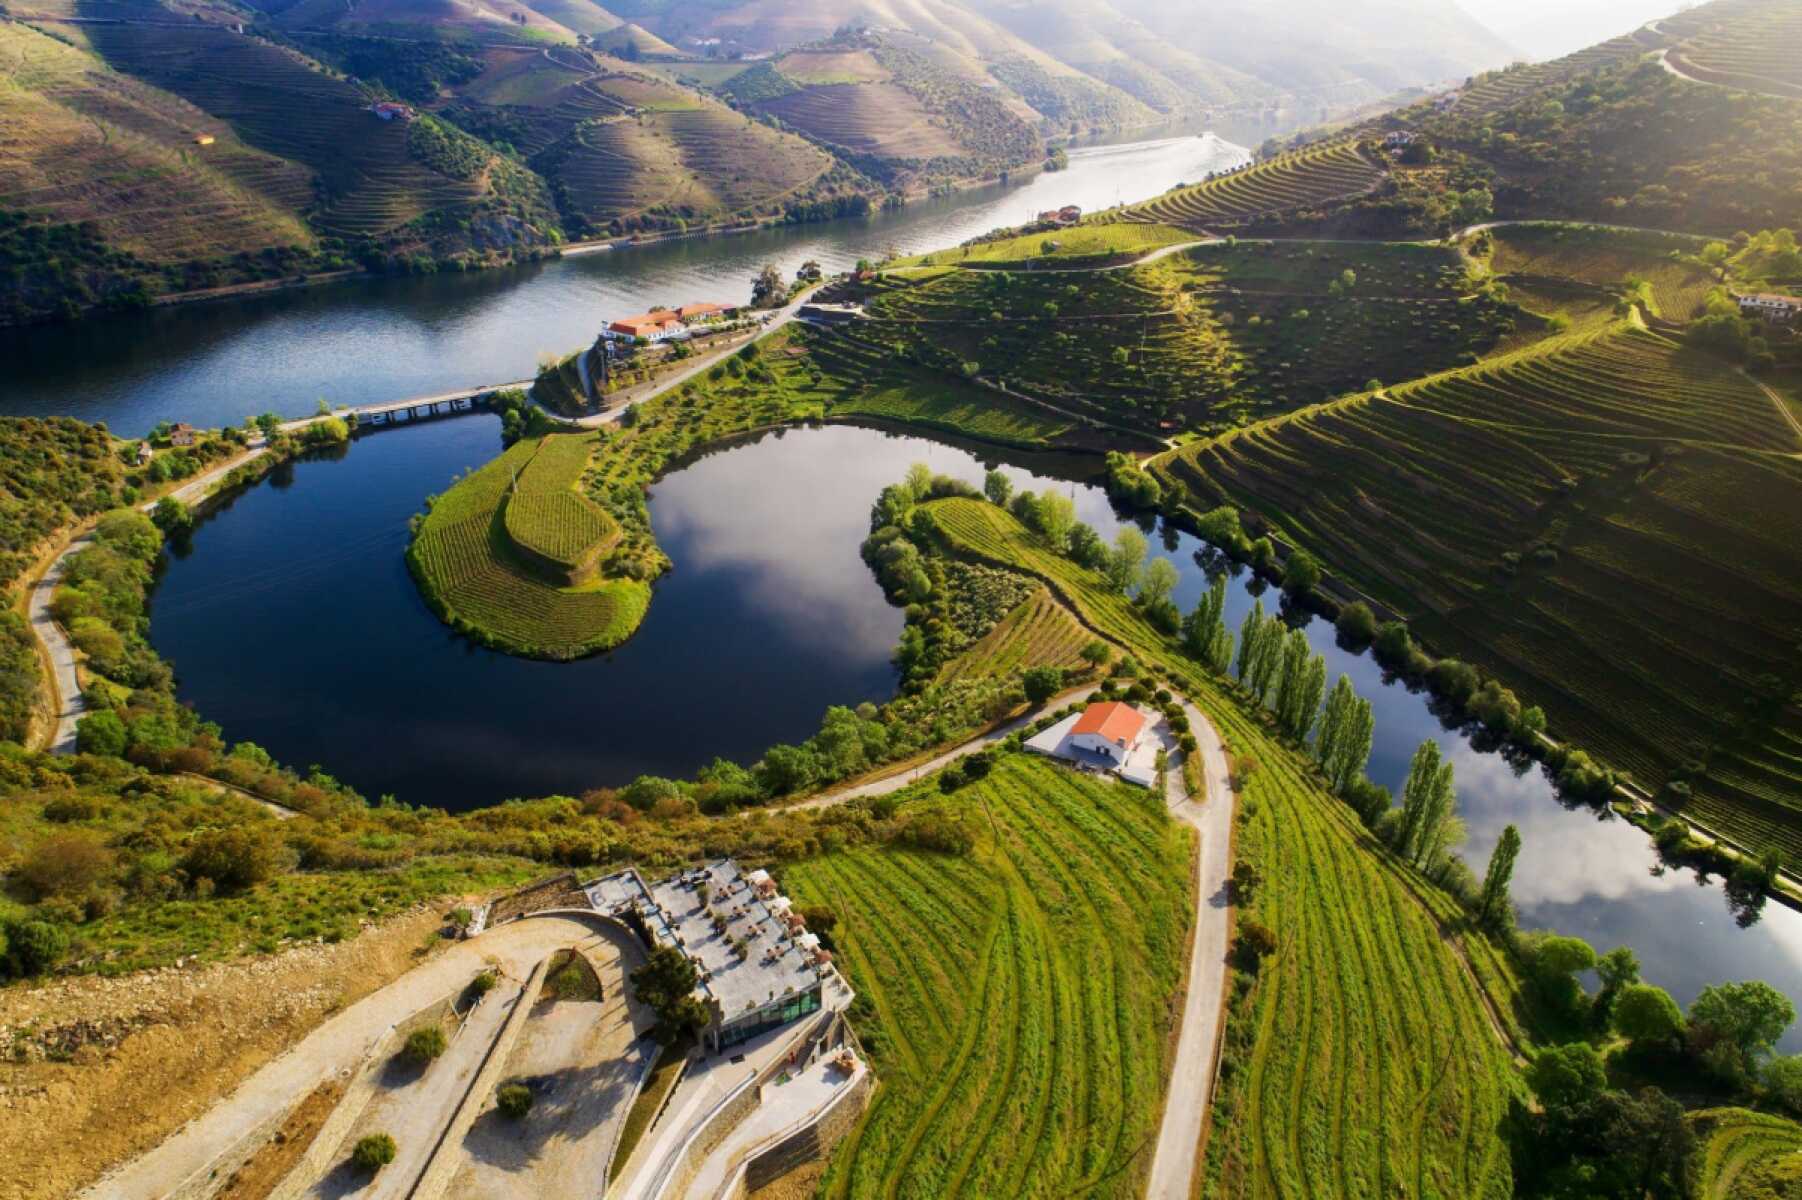 Οι μοναδικής ομορφιάς (και προστατευμένοι από την Unesco) αμπελώνες στην κοιλάδα του ποταμού Douro, Πορτογαλία.